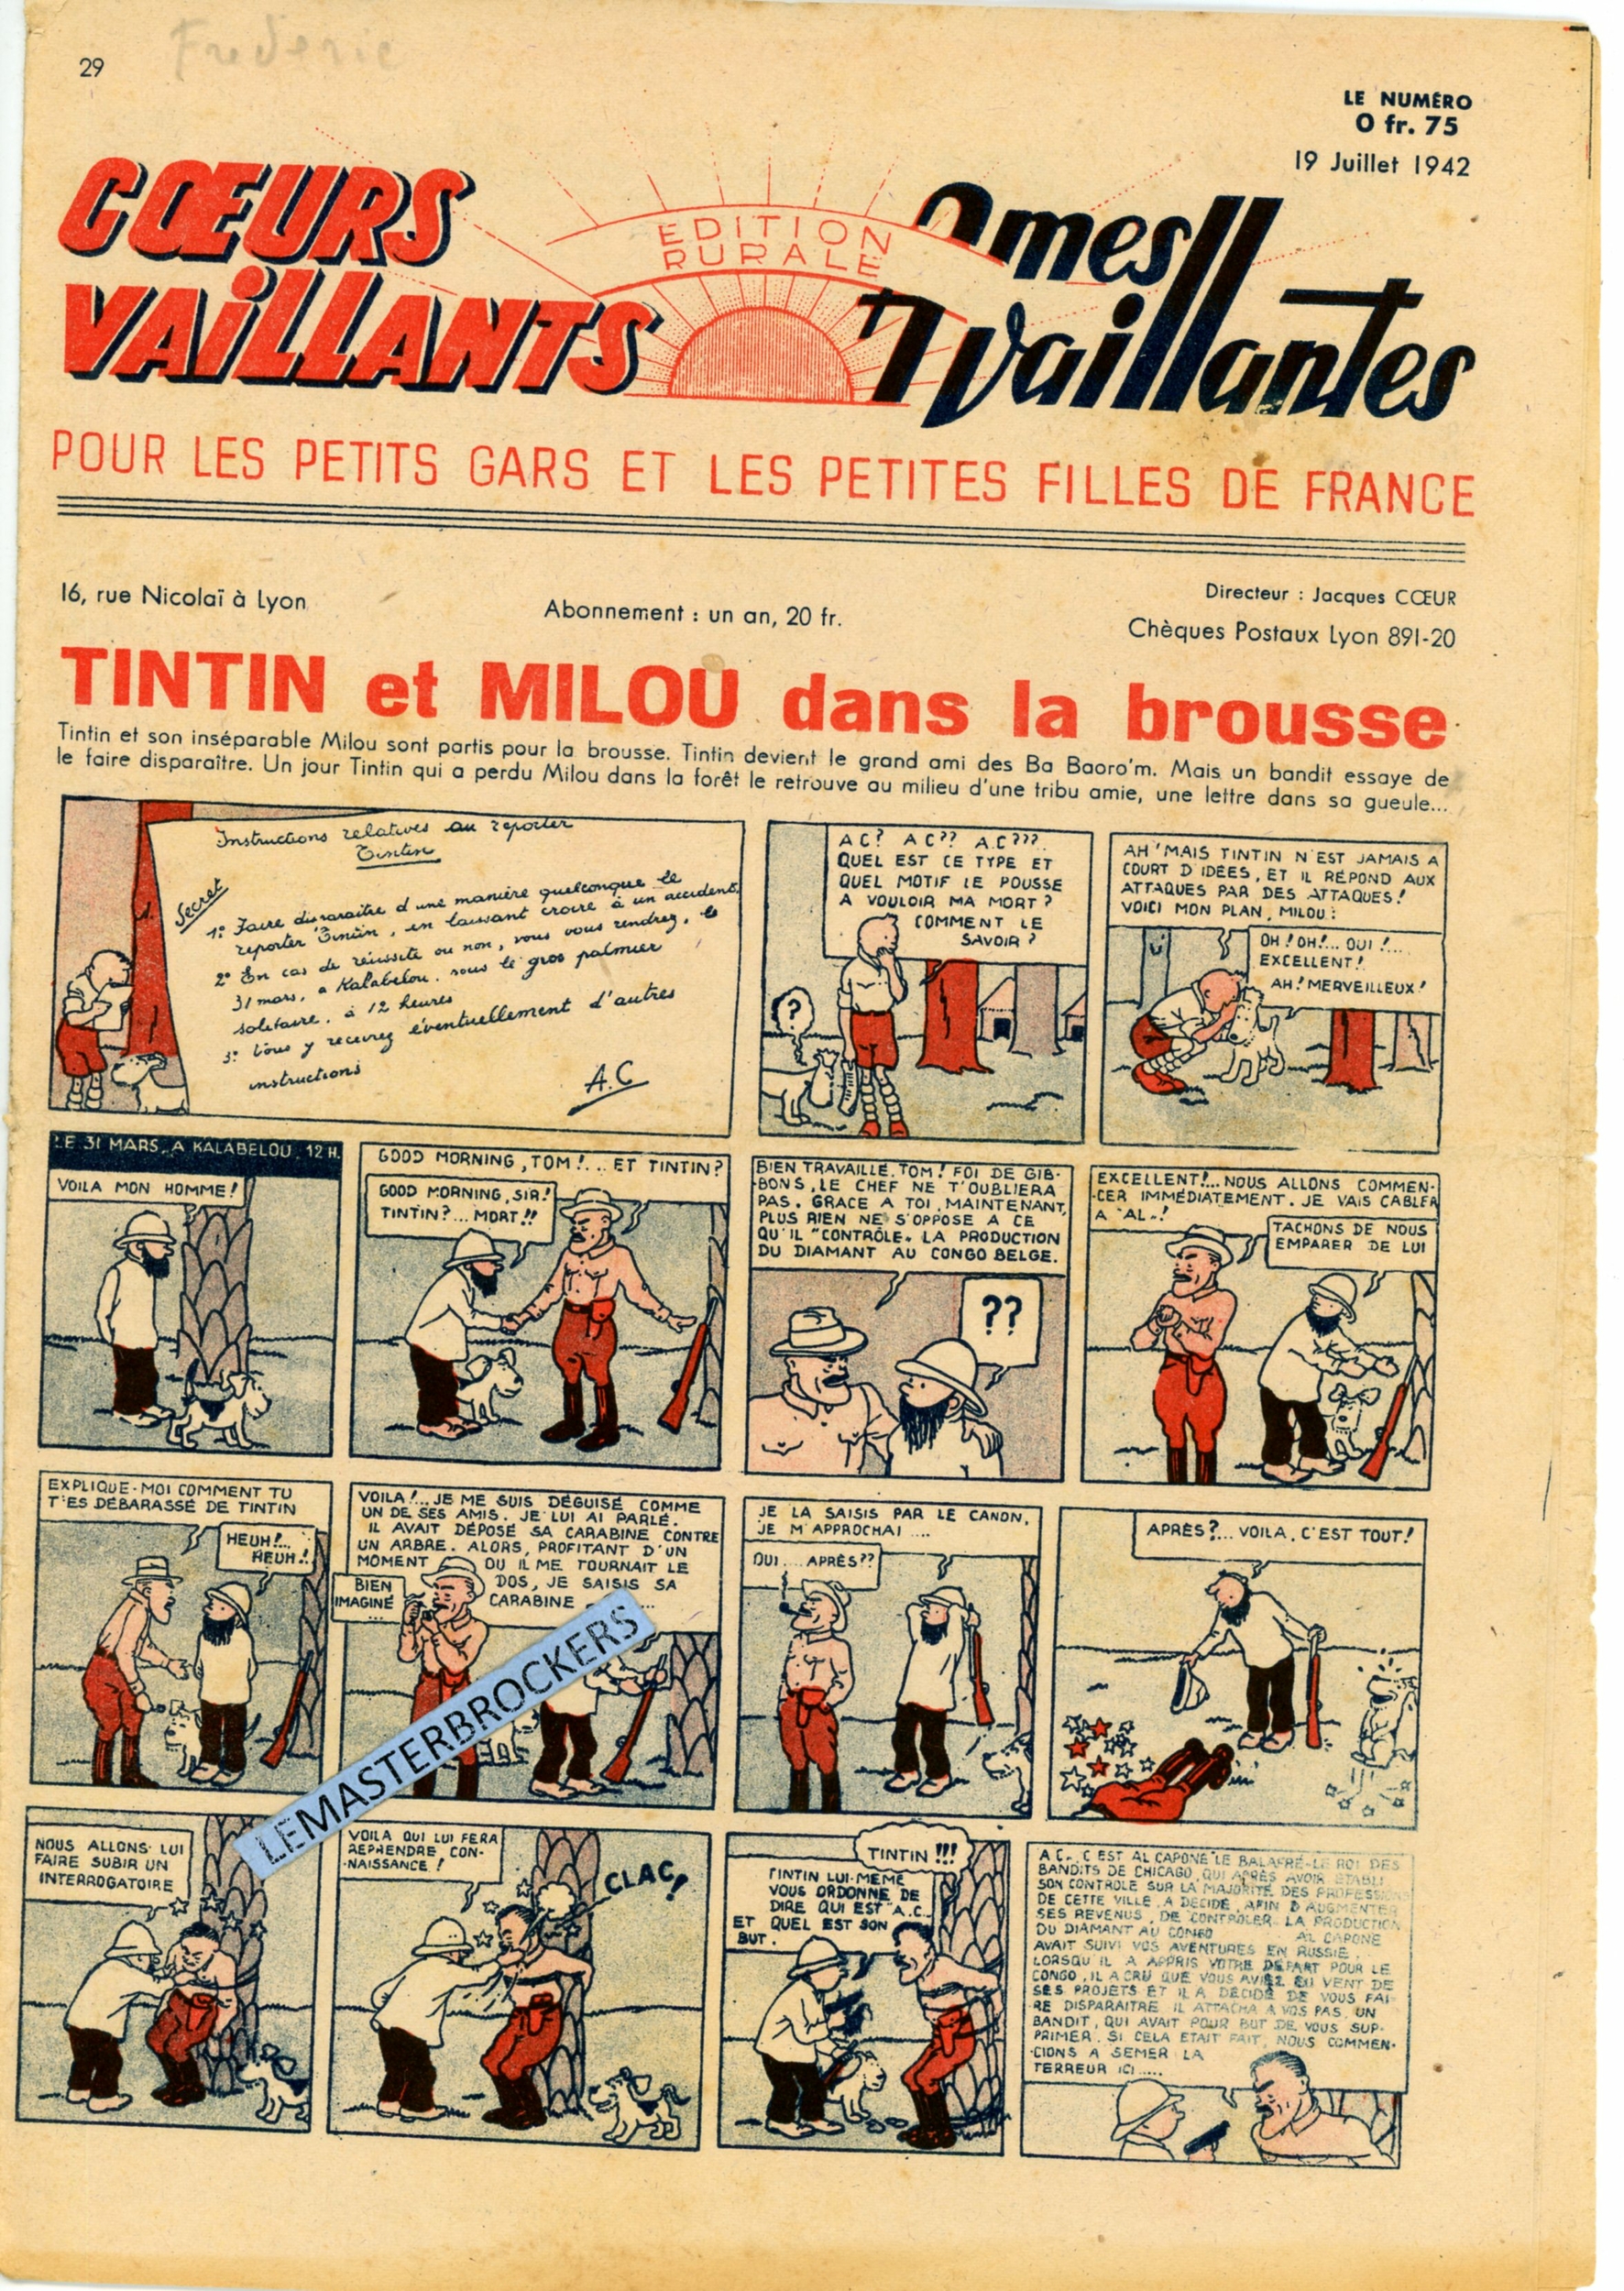 TINTIN ET MILOU DANS LA BROUSSE 1942 COEURS VAILLANTS 29  LEMASTERBROCKERS